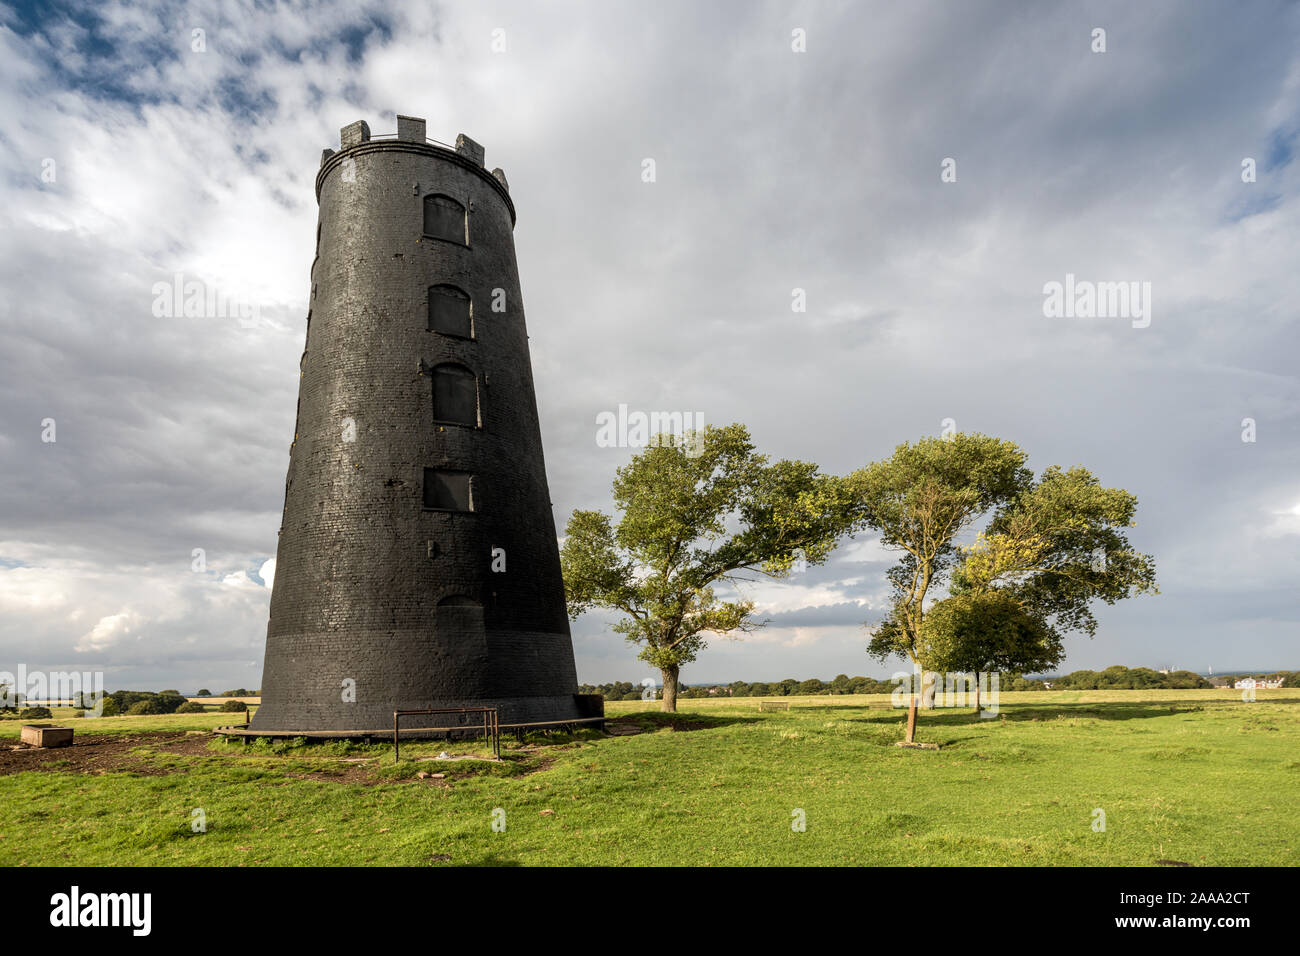 Die schwarze Mühle, ein altes Backsteingebäude, Windmühle mit schwarzem Teer mit Keine Segel gestrichen, und ist ein Wahrzeichen an Beverley Westwood, Beverley, East Yorkshire, England Stockfoto